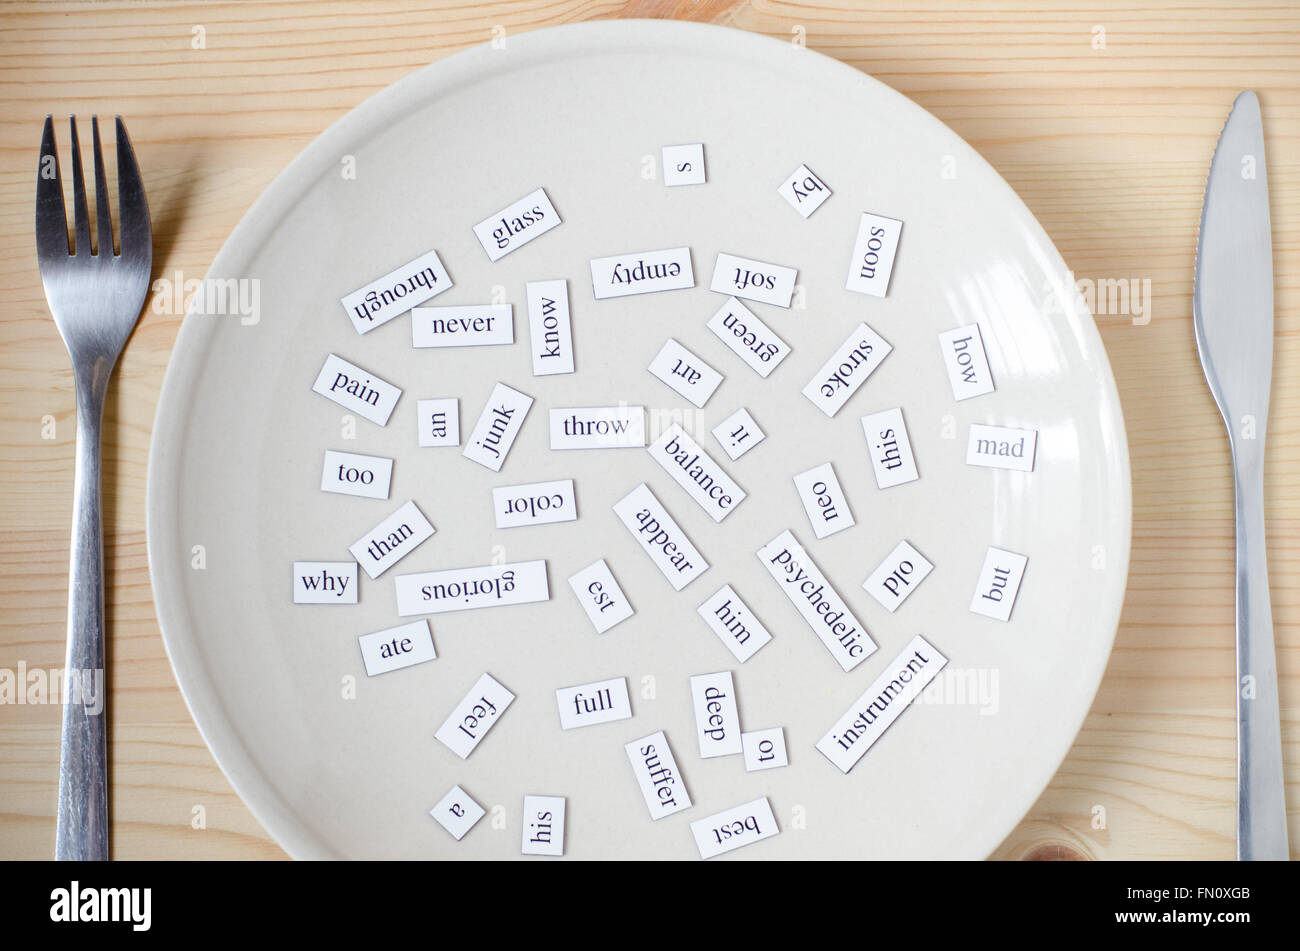 Englisch lernen macht Spaß - zufällige englische Wörter auf dem Teller - Aufnahme der Sprache Stockfoto